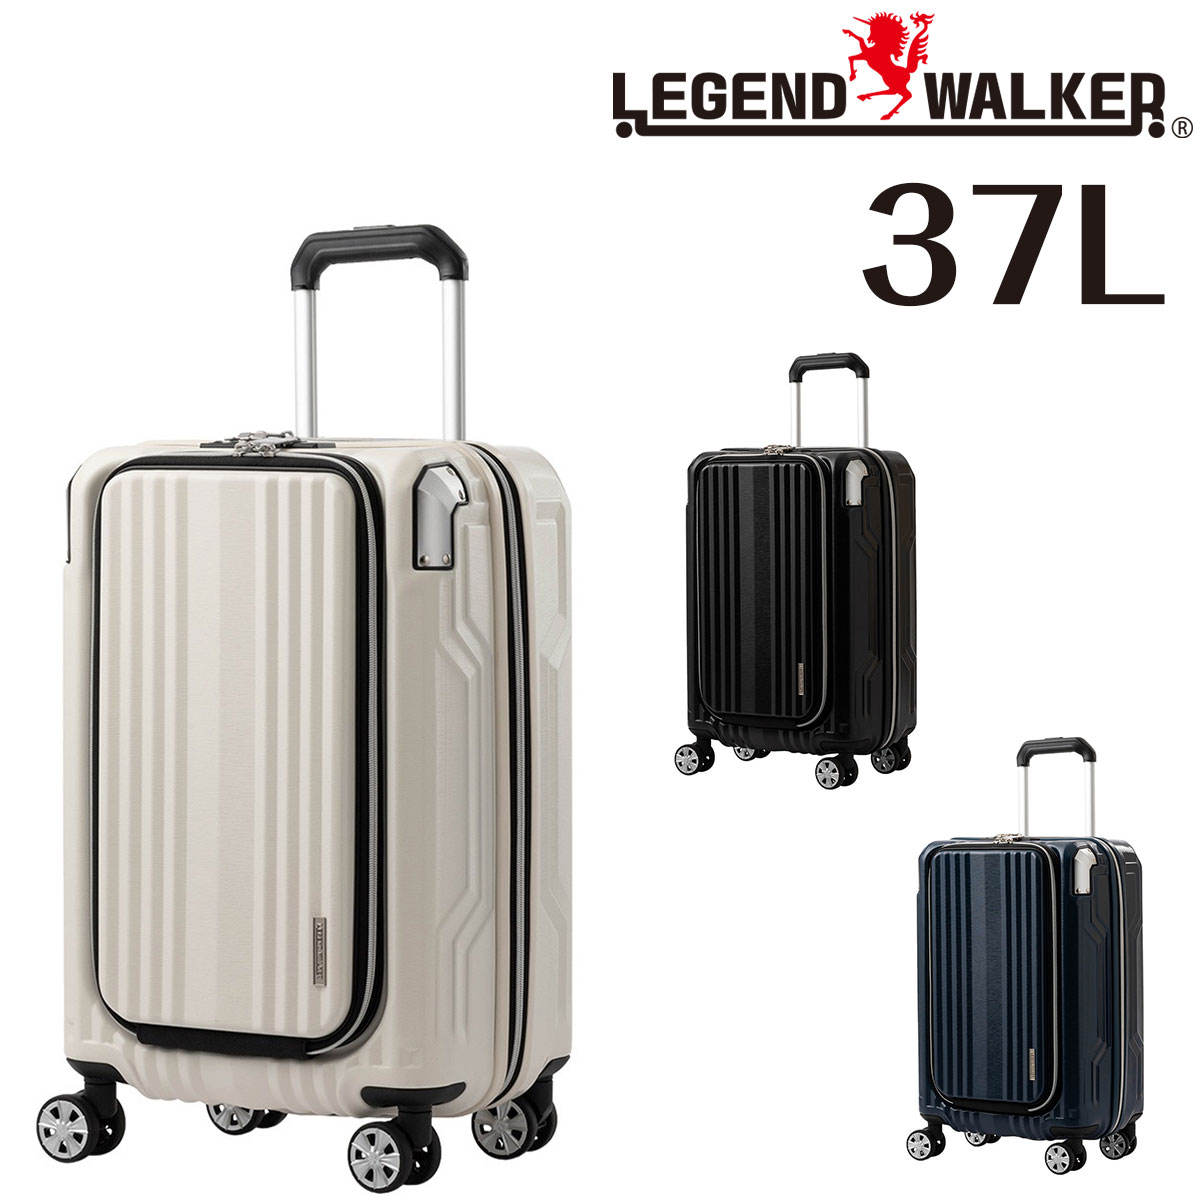 【メーカー直送】 レジェンドウォーカー LEGEND WALKER ブレイドプラス BLADE PLUS スーツケース キャリー ハード 小型 37L 1〜2泊程度